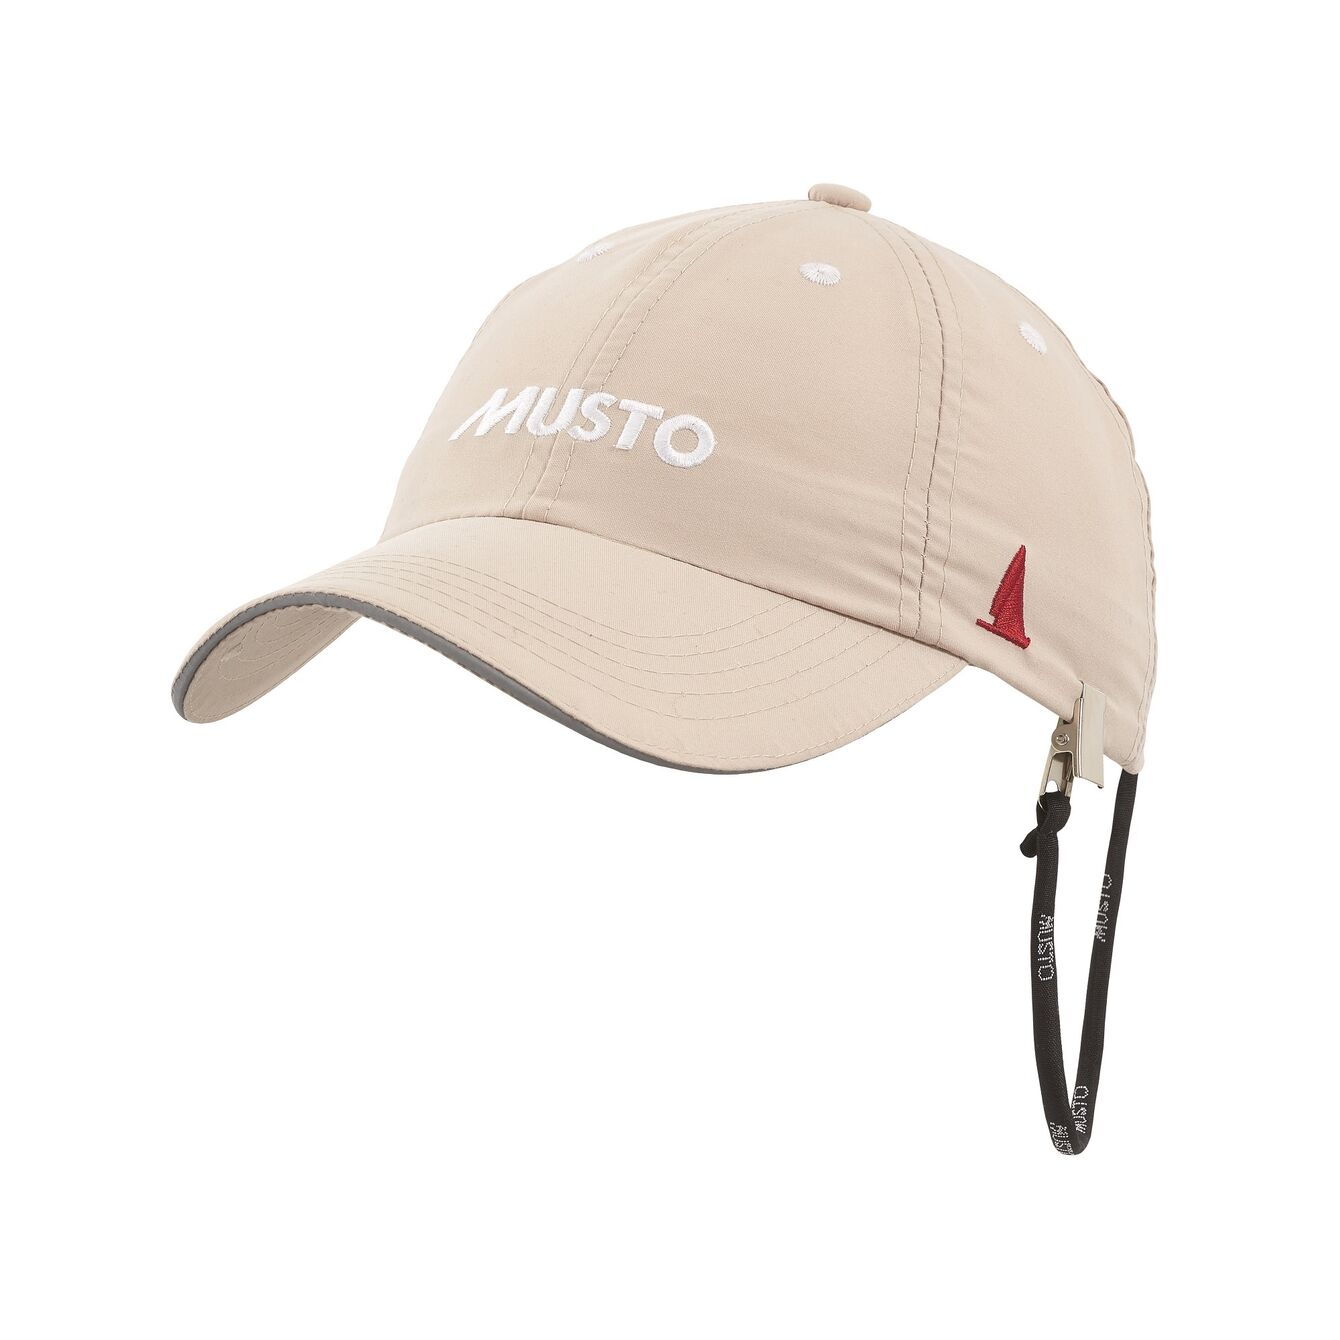 MUSTO Cap - Essential Evo Fast Dry Crew Cap - Light Stone